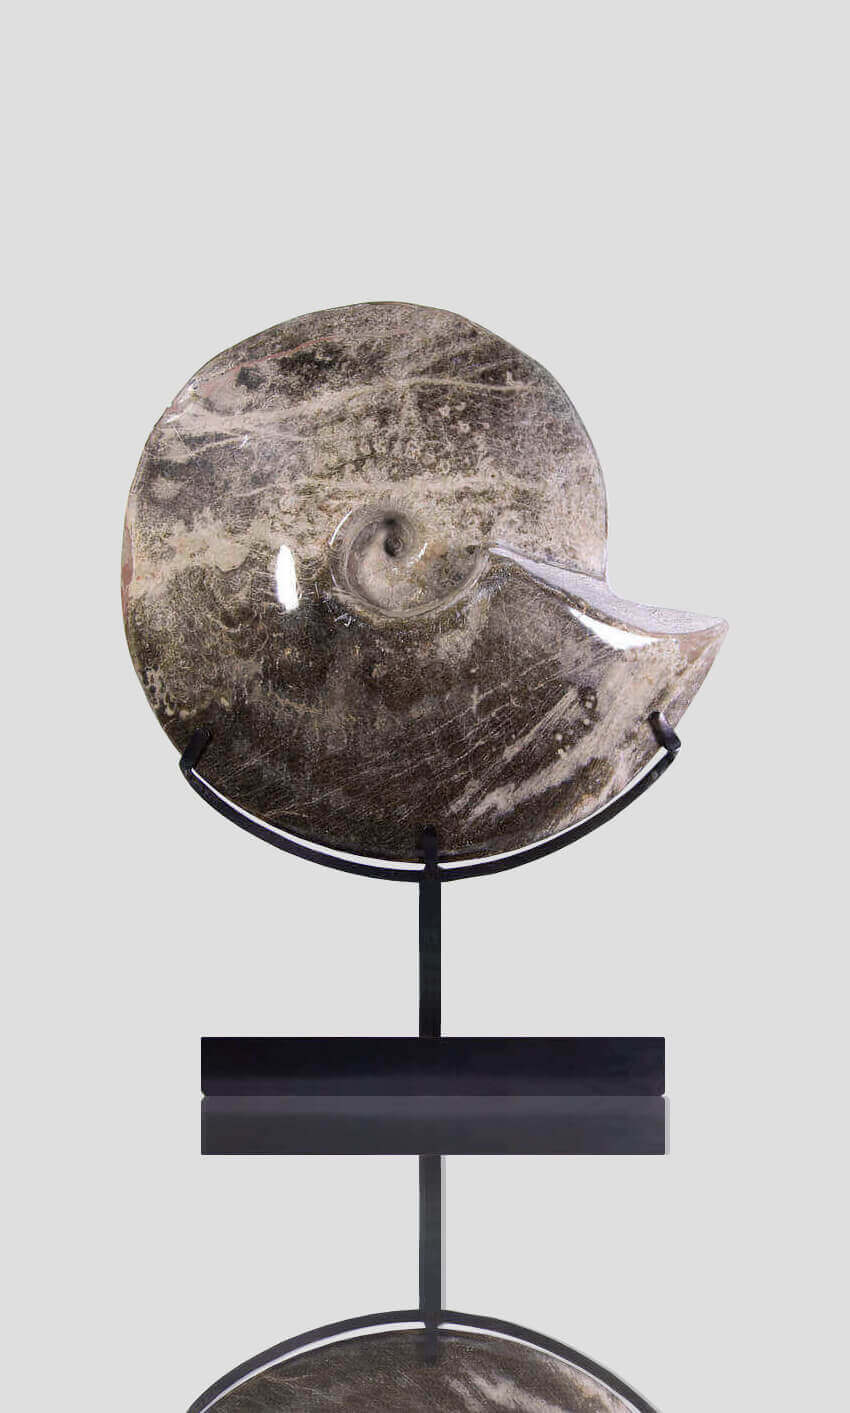 Hoplitoides Wohltmanni Ammonite 382mm on bronze stand